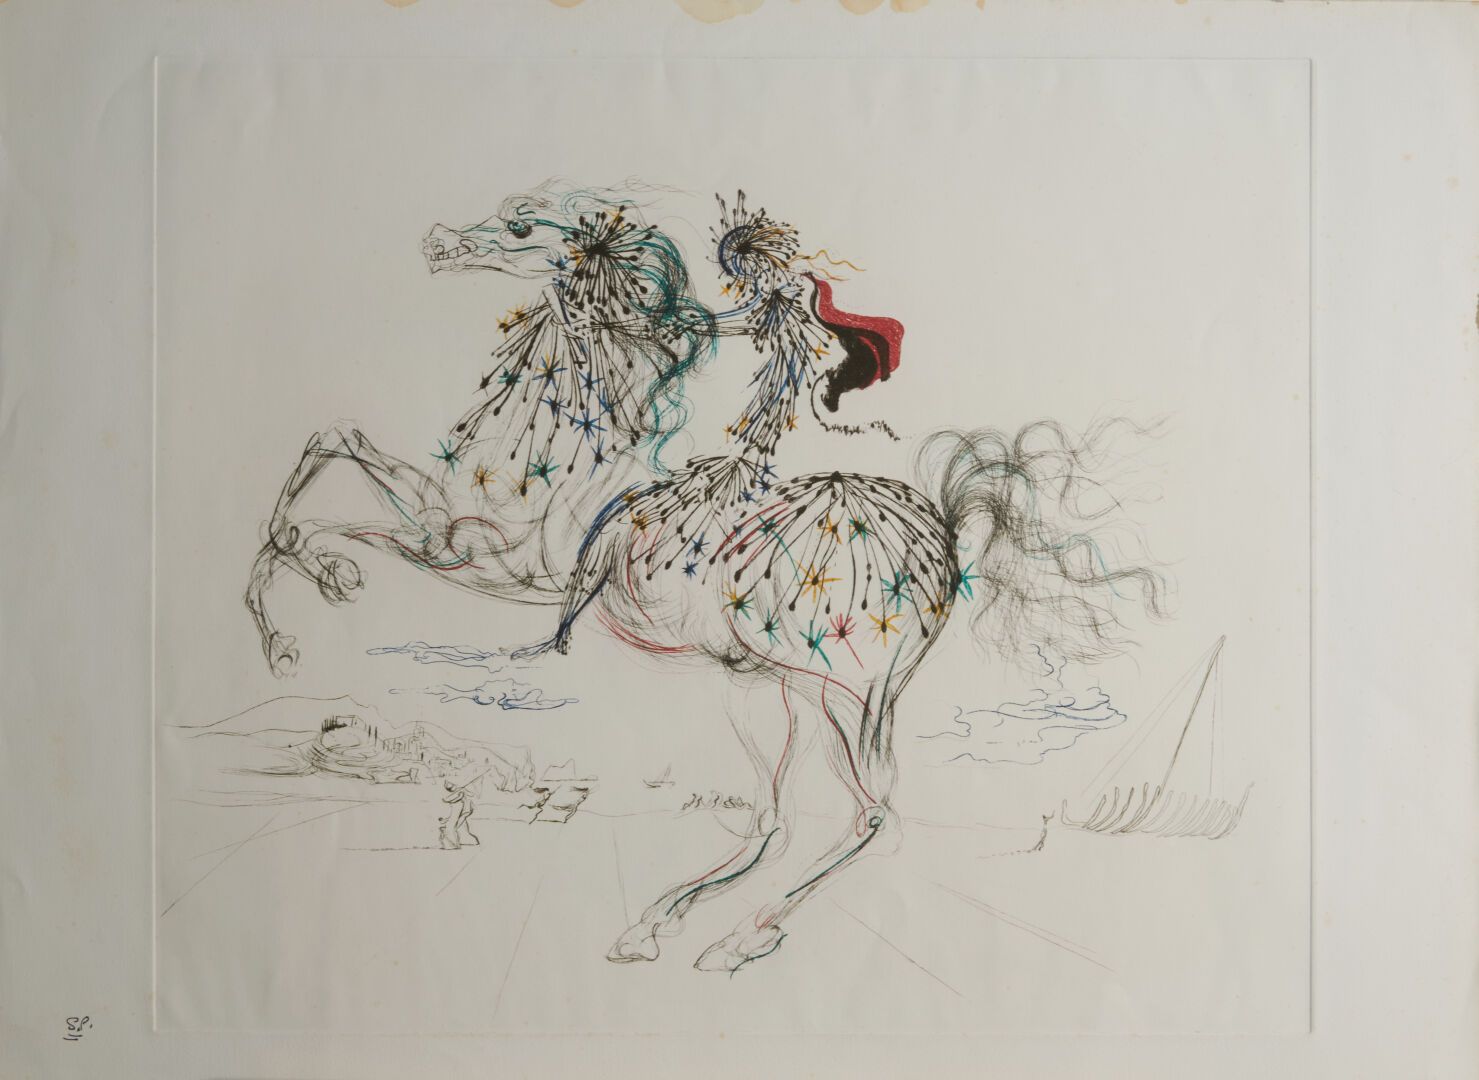 Null DALI Salvador (1904-1989)

"Le cavalier" impression - 49x59